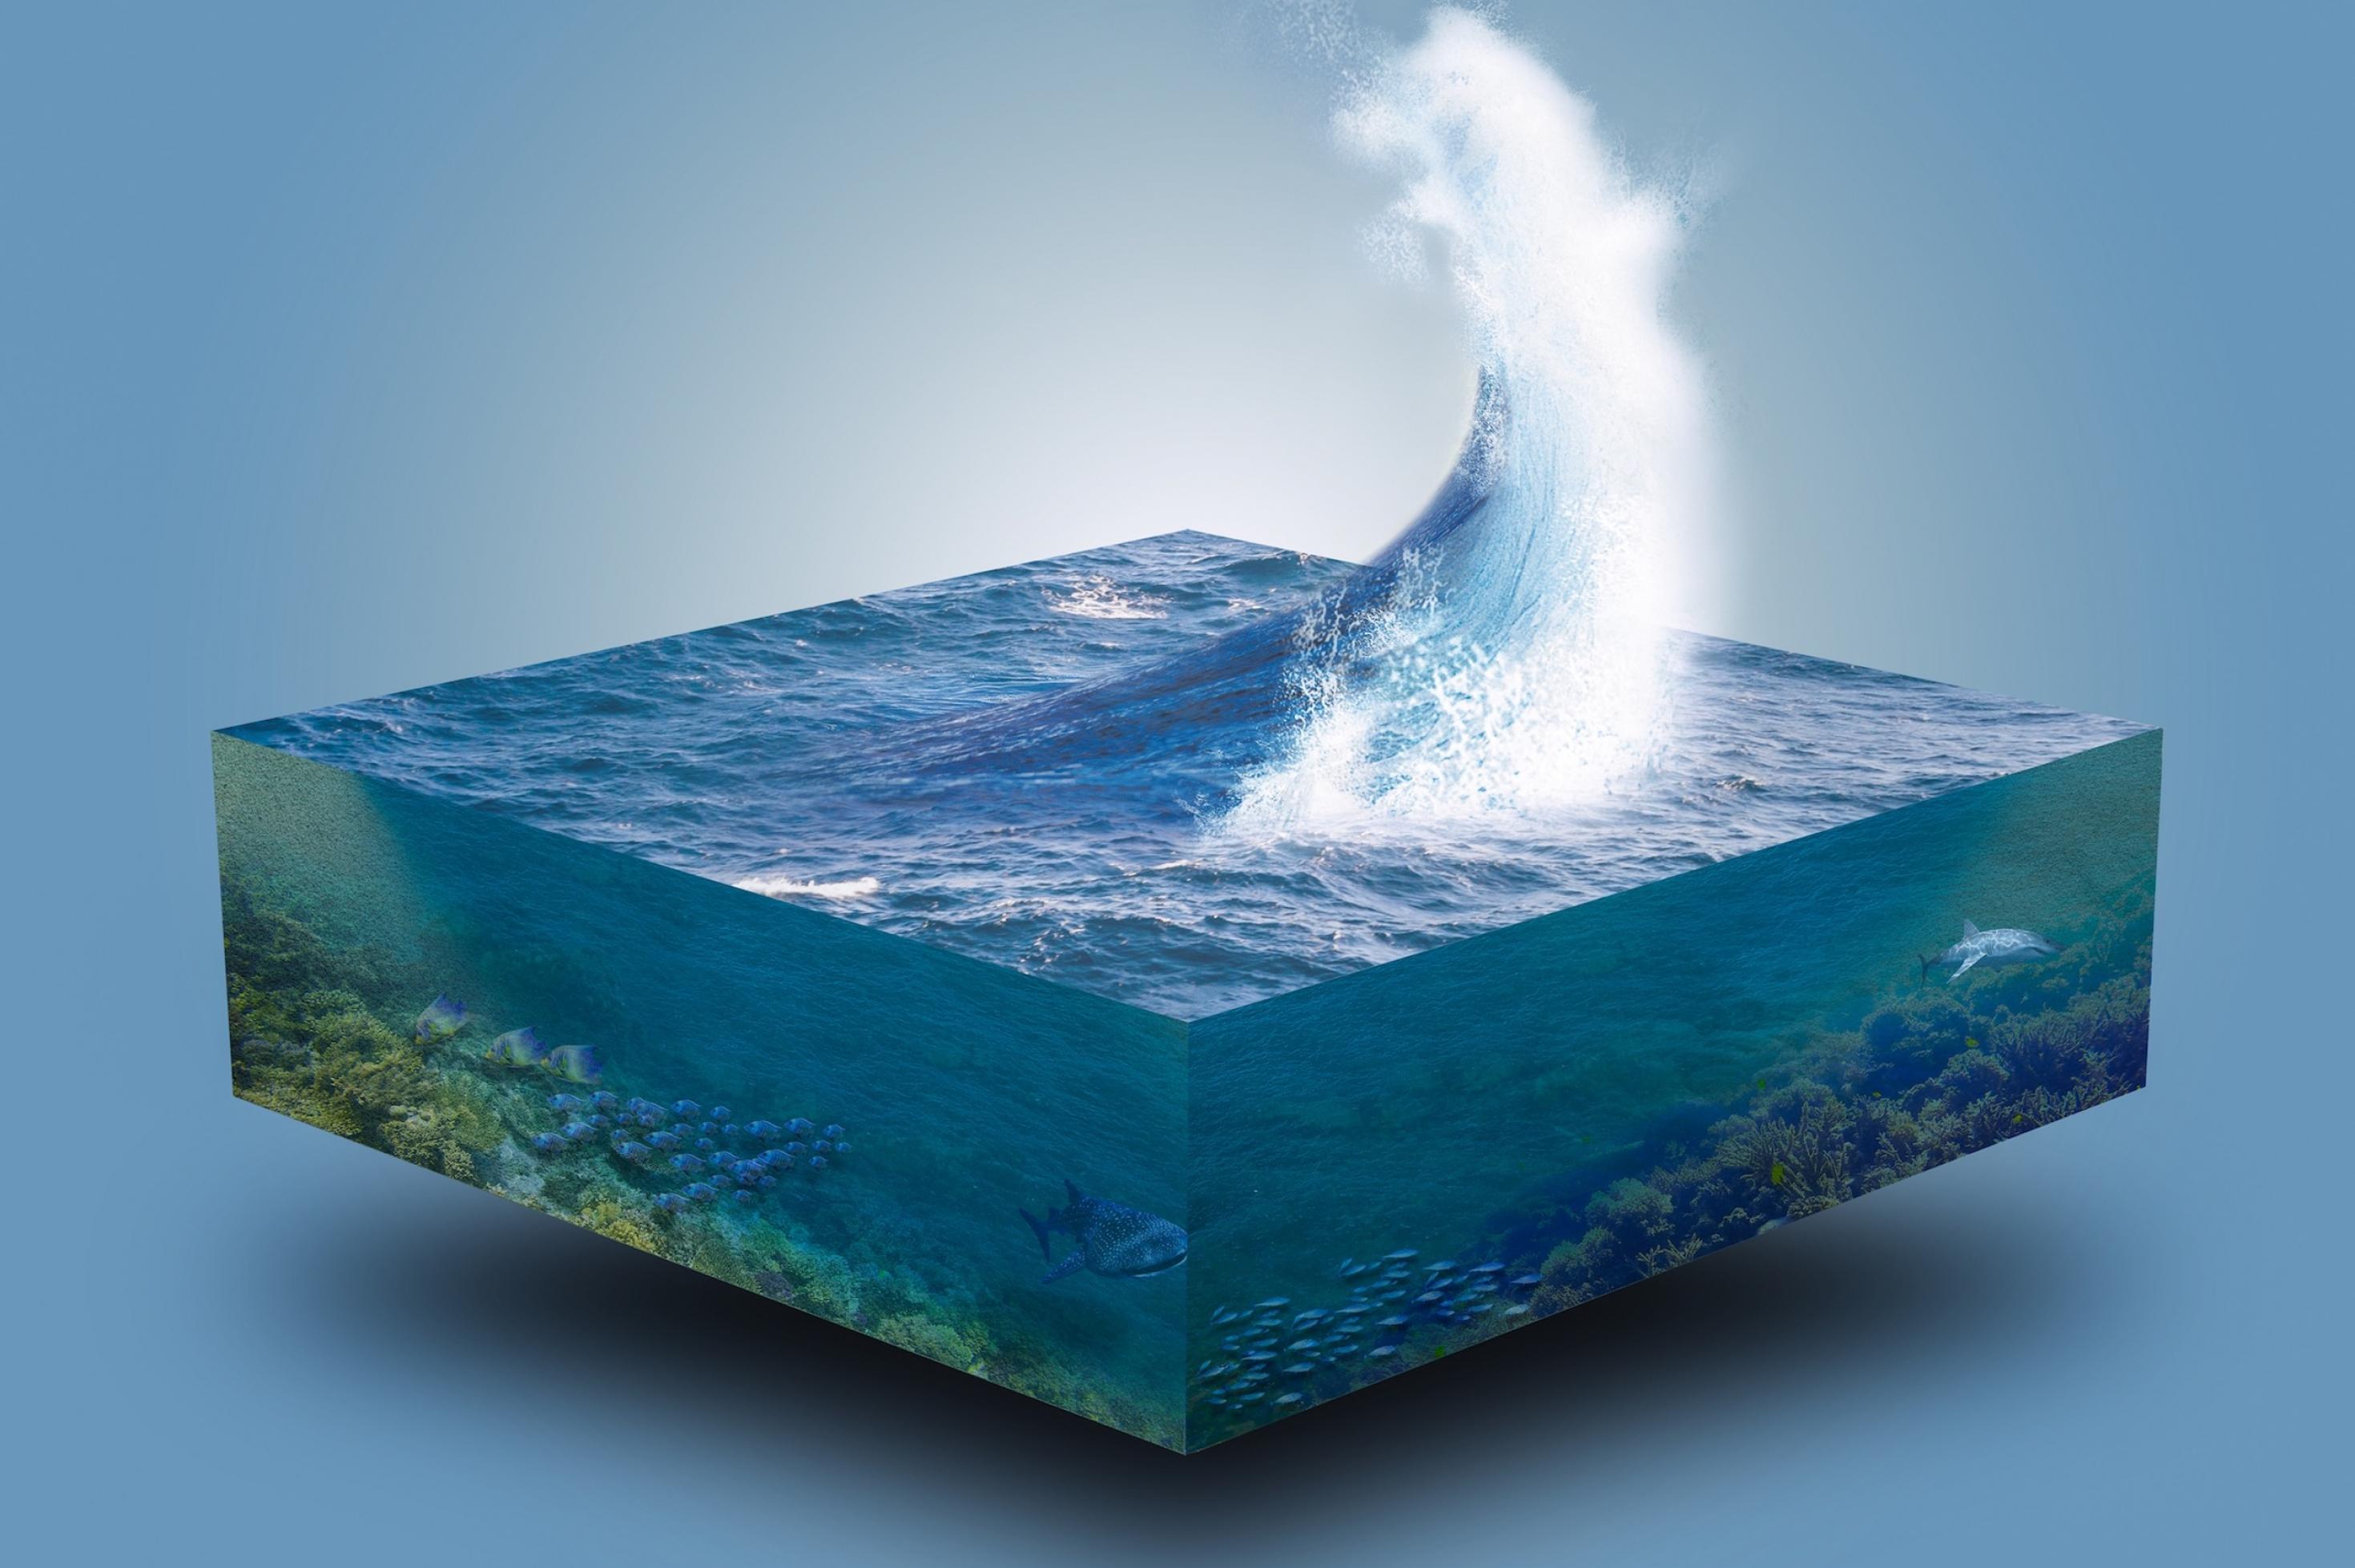 Ein Symbolbild mit einem viereckigen Ausschnitt aus dem Meer von den Wellen bis zur Tiefsee.